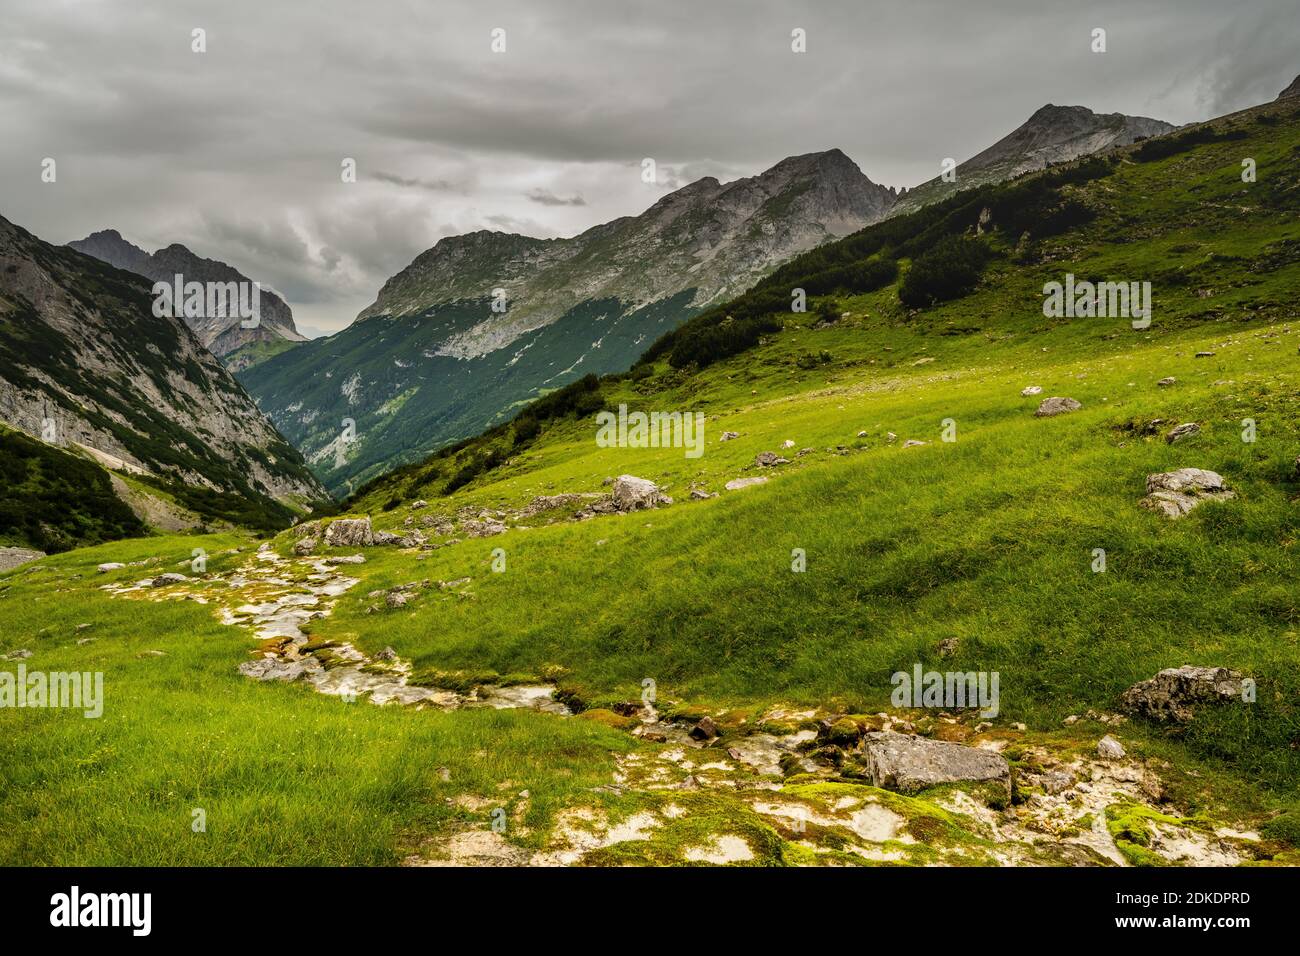 Eine moosbewachsene Quelle im Karwendel mit einer großen Gruppe Gämsen und einer grünen Bergwiese. Stockfoto